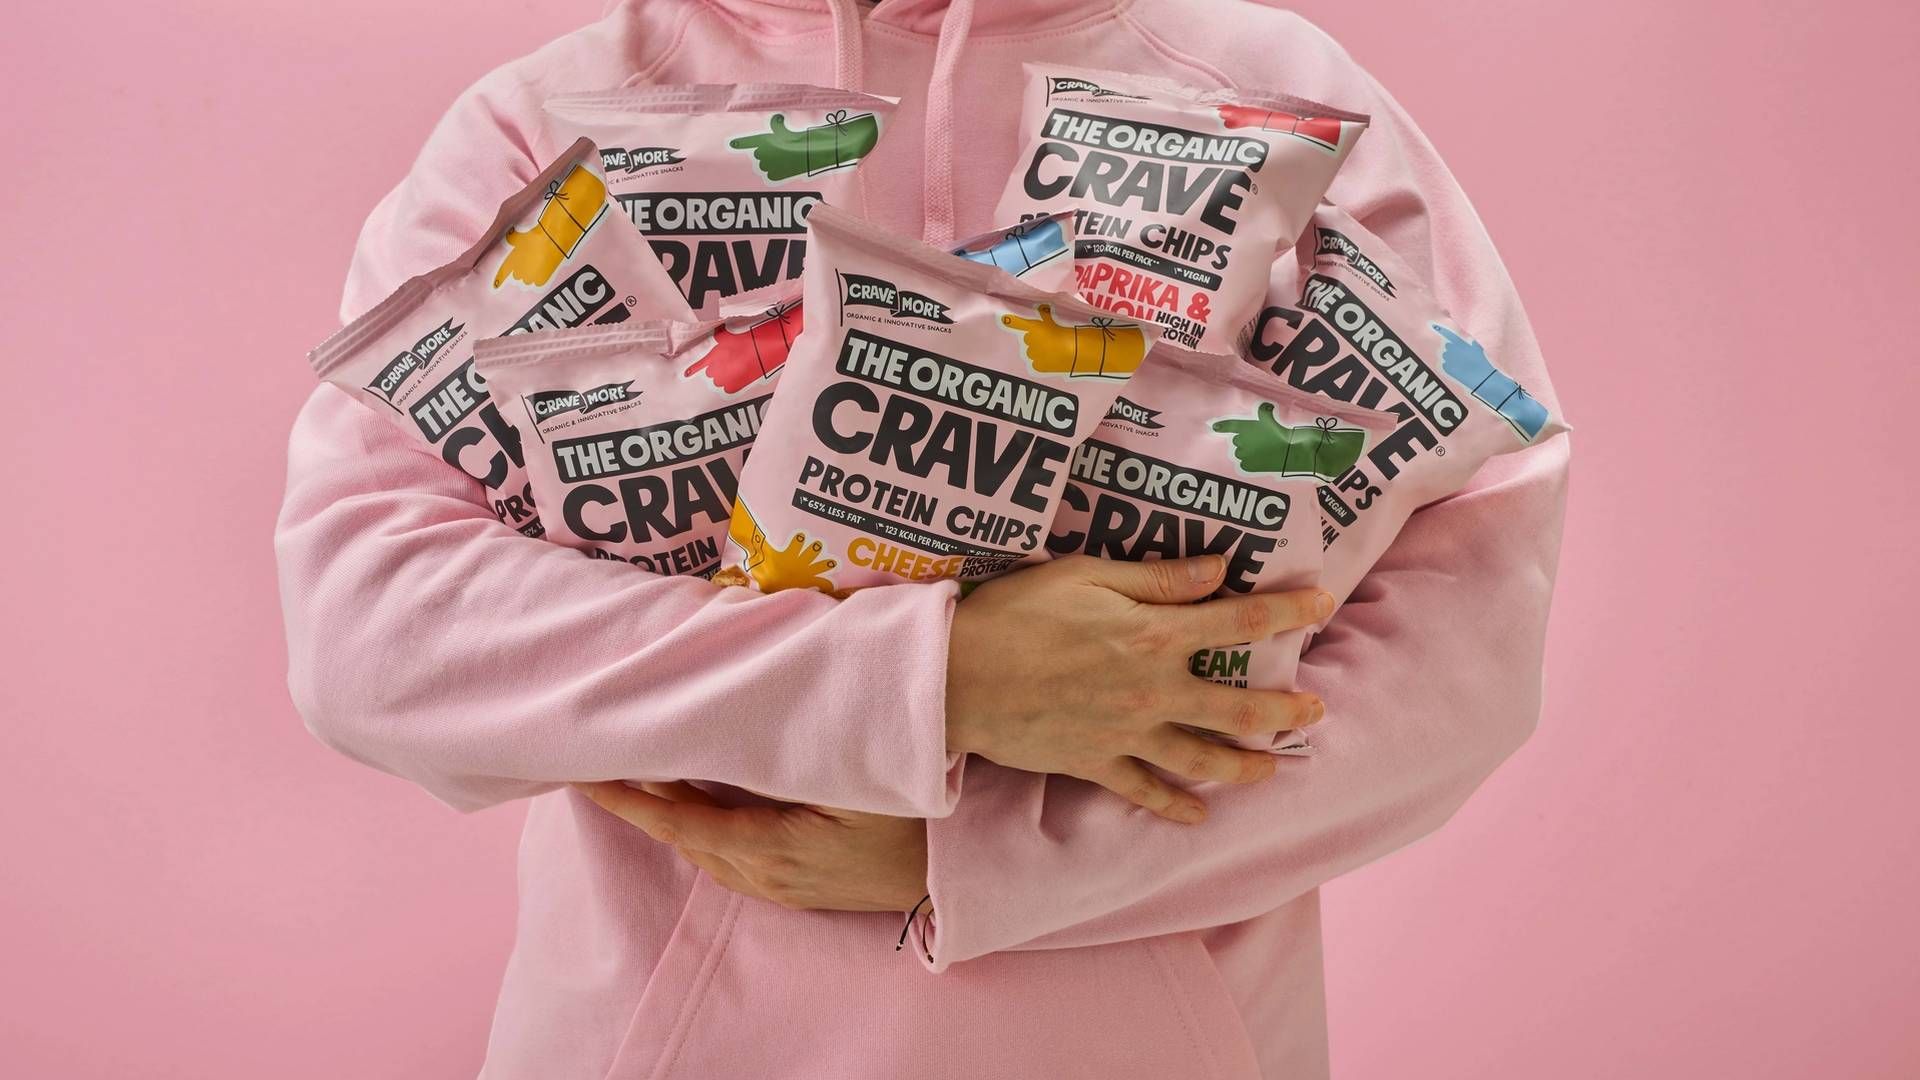 The Organic Crave Company satser på at lave sundere chips end de normale kartoffelvarianter lavet på linser, og har også en granola-bar i pipelinen af nye produkter. | Foto: PR/The Organic Crave Company